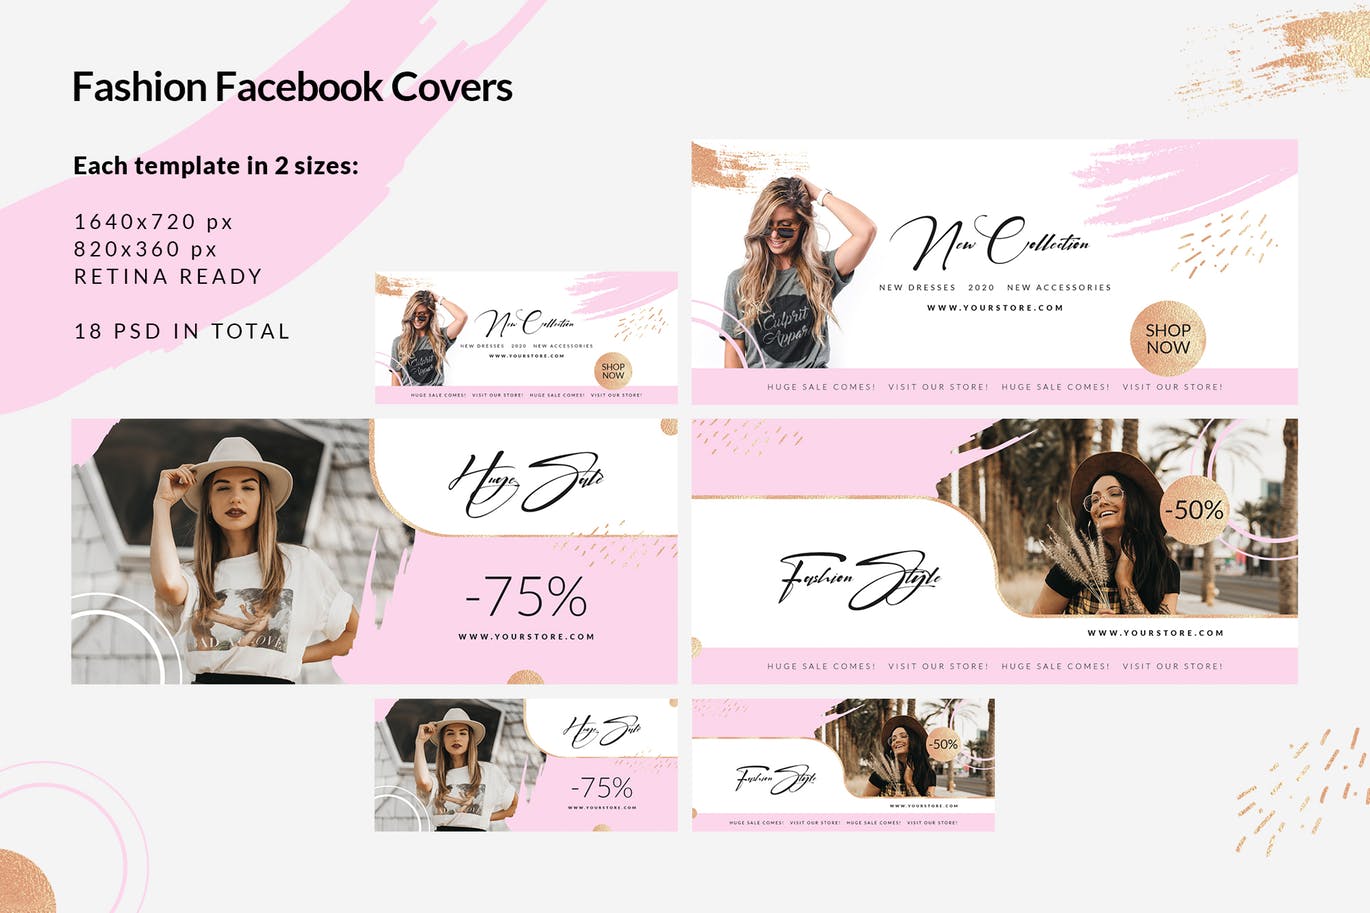 时尚品牌打折促销Facebook封面设计模板16图库精选 Fashion Facebook Covers插图(2)